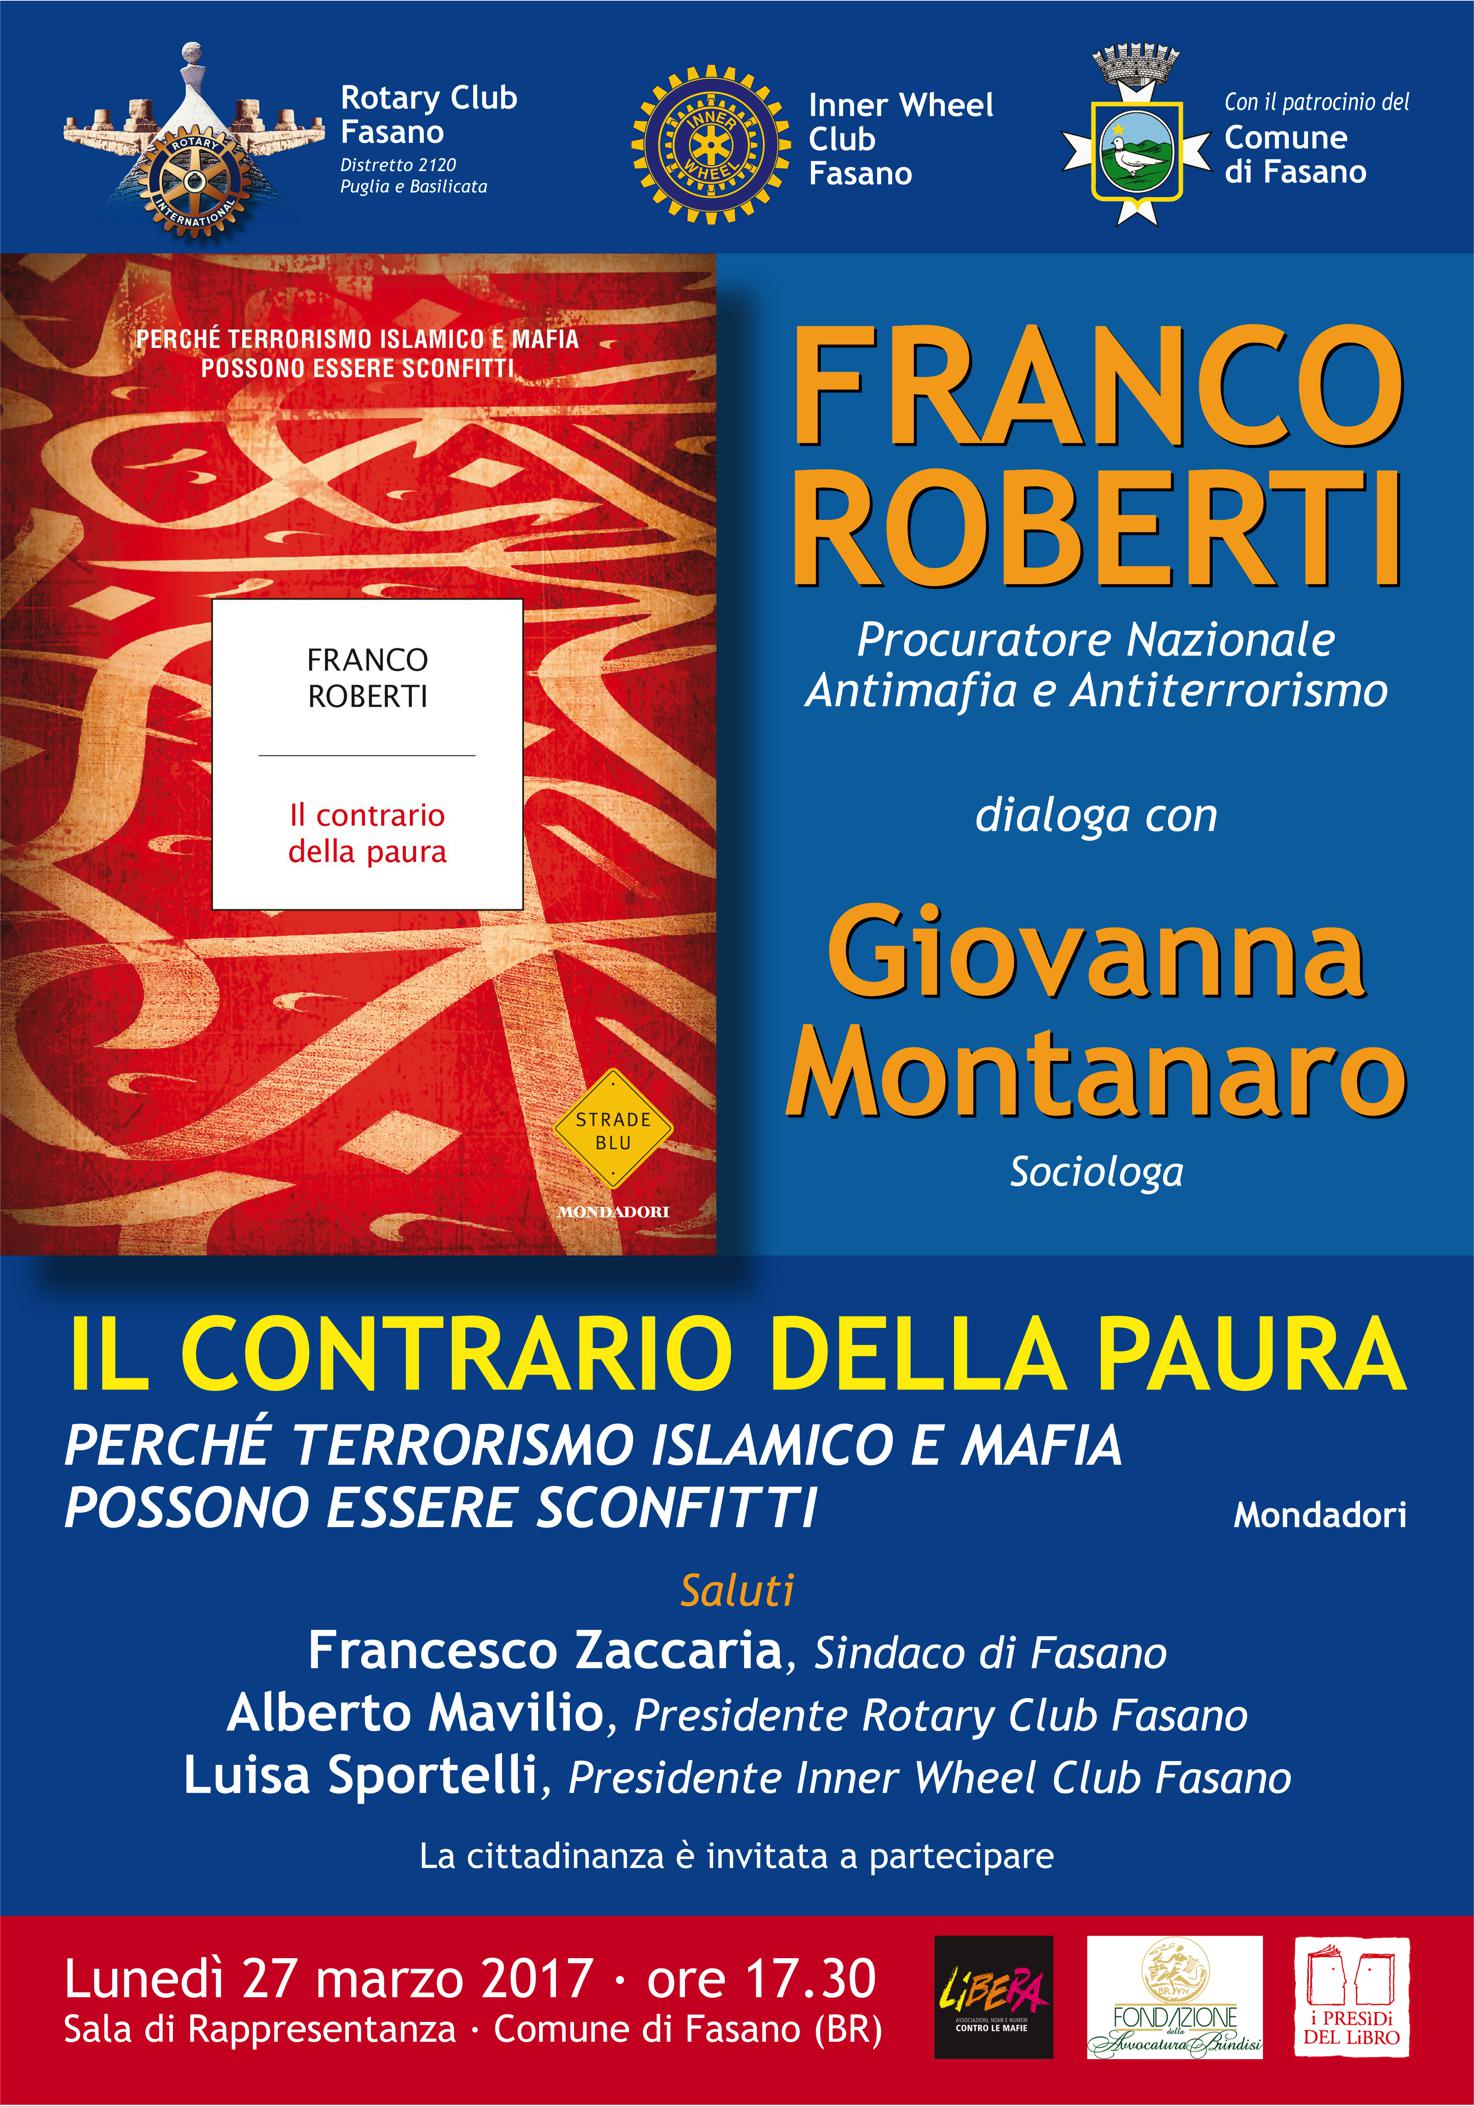 Il Contrario della Paura - Franco Roberti dialoga con Giovanna Montanaro, Fasano 27 marzo 2017